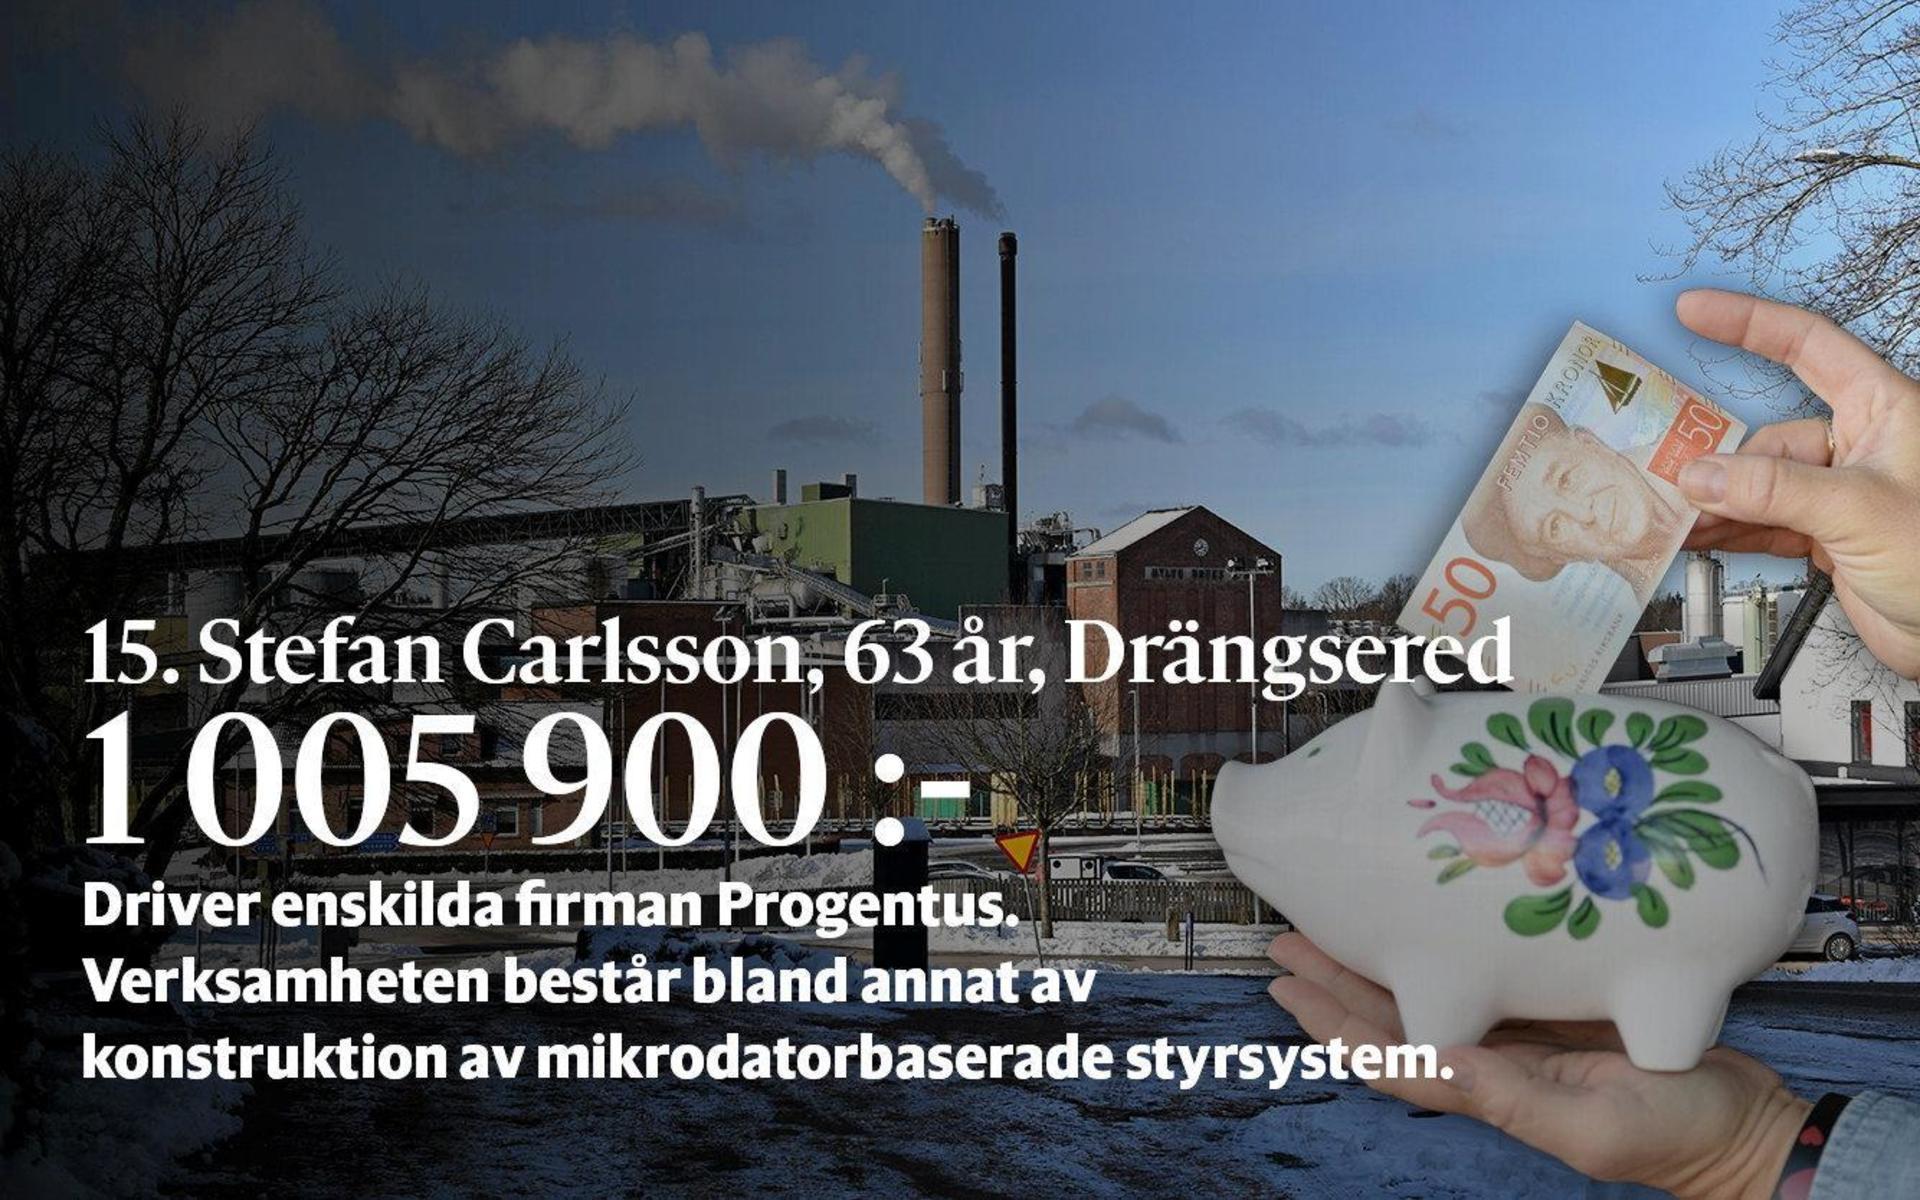 15. Stefan Carlsson driver enskilda firman Progentus vars verksamhet är konstruktion av mikrodatorbaserade styrsystem, annan konsultverksamhet och skogsbruk.